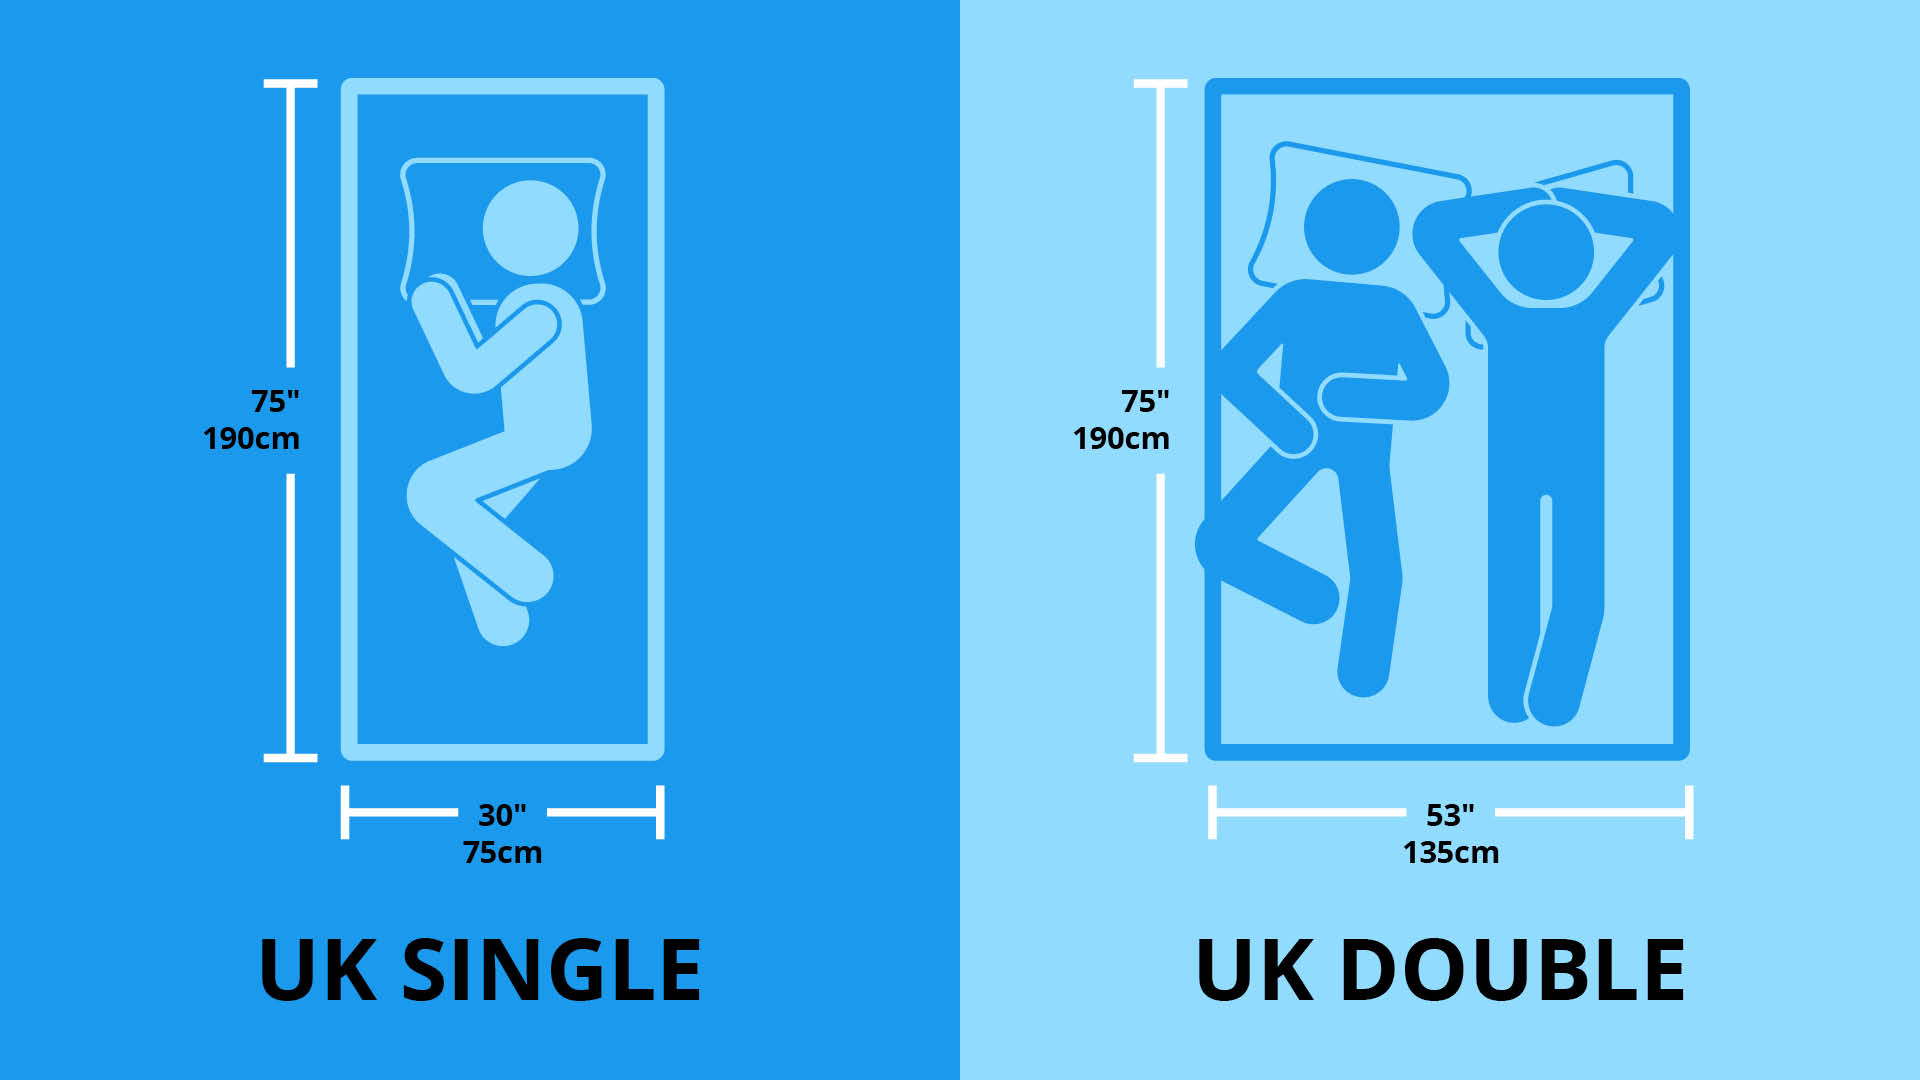 UK single and double mattress size